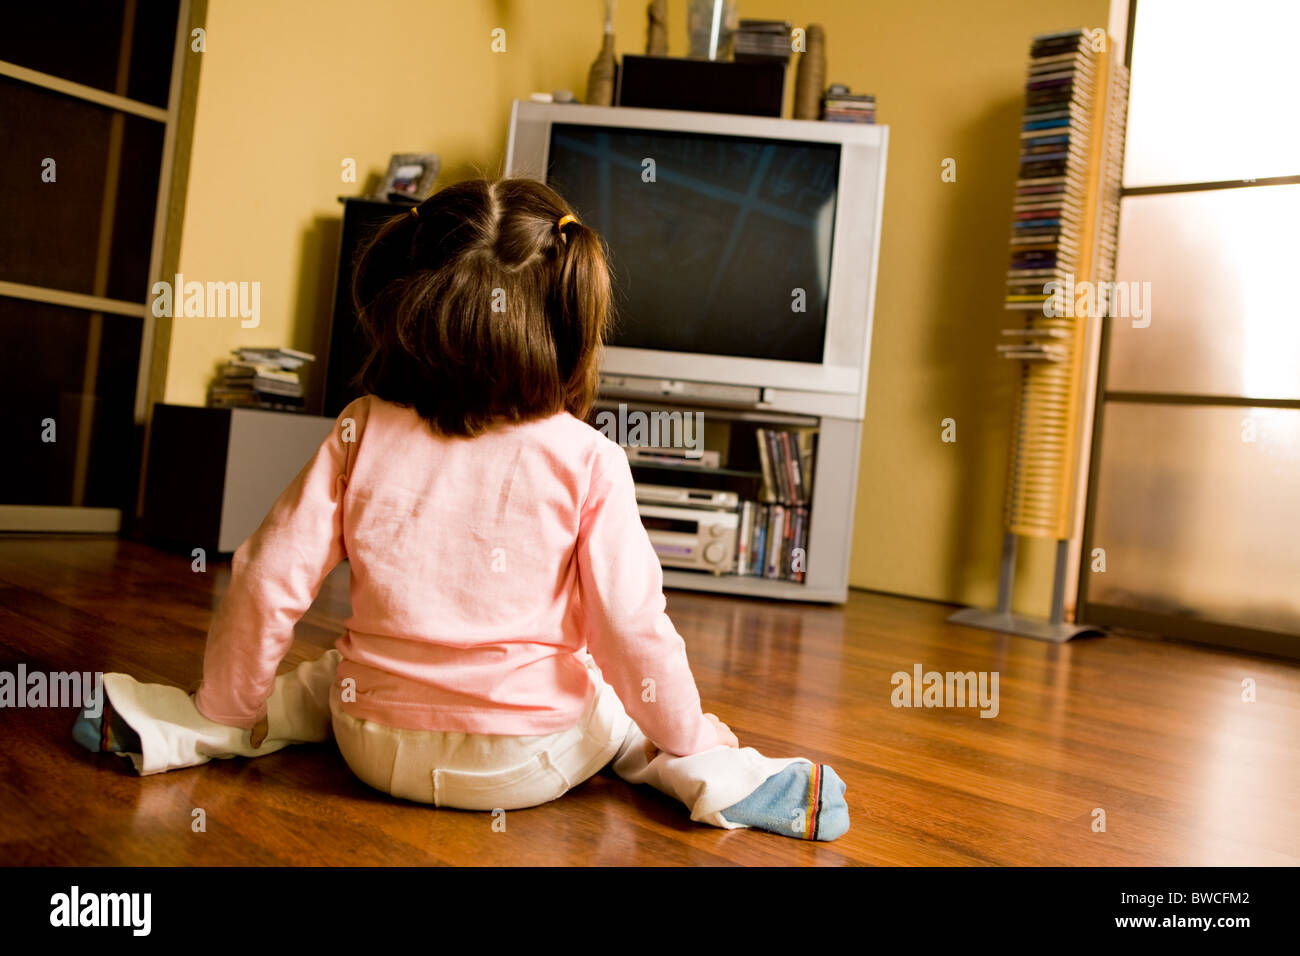 Heckansicht des kleinen Mädchens auf dem Boden sitzen und vor dem Fernseher im Wohnzimmer Stockfoto